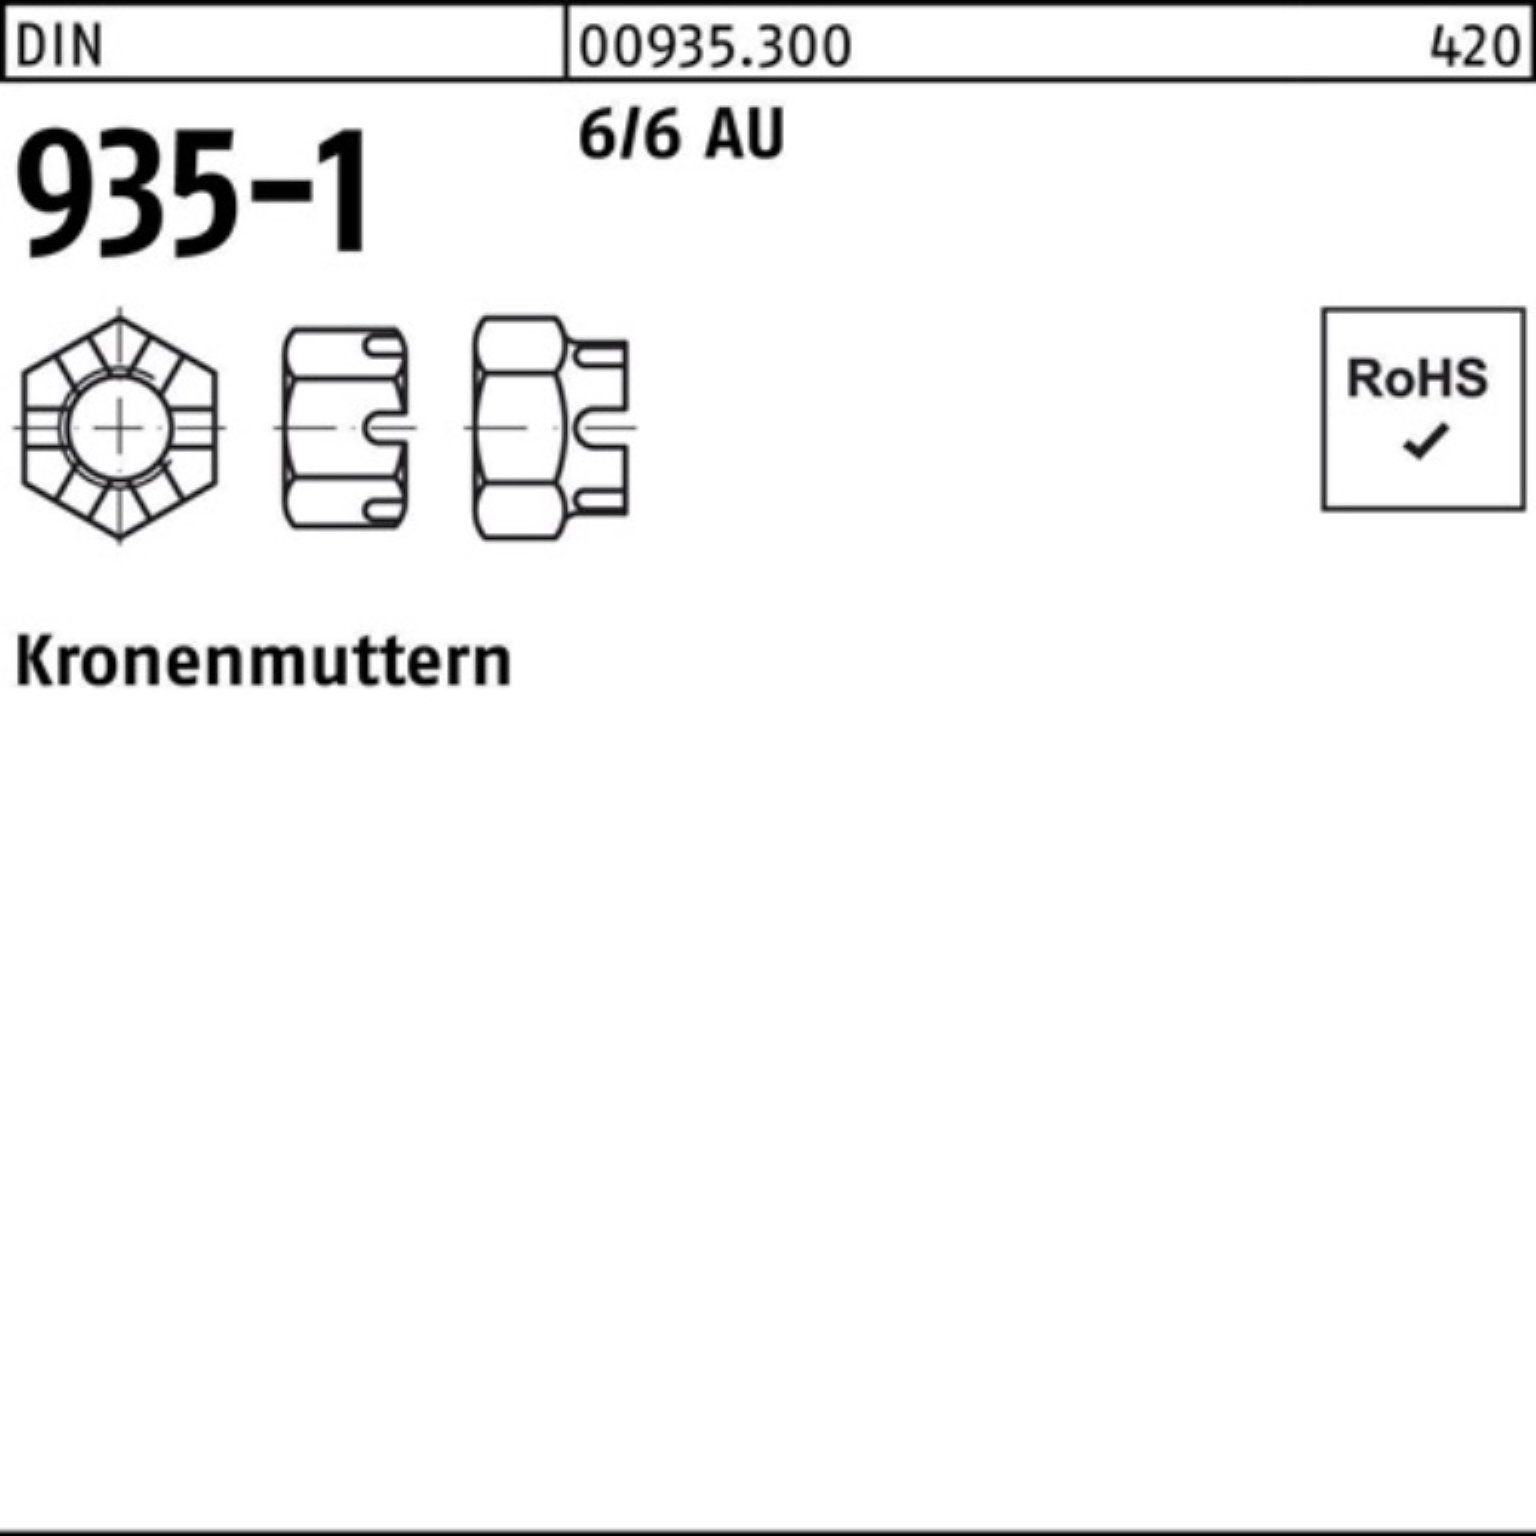 Automatenstahl 100 M5 Kronenmutter Reyher Stück DIN Pack 100er 935-1 6/6 DIN Kronenmutter